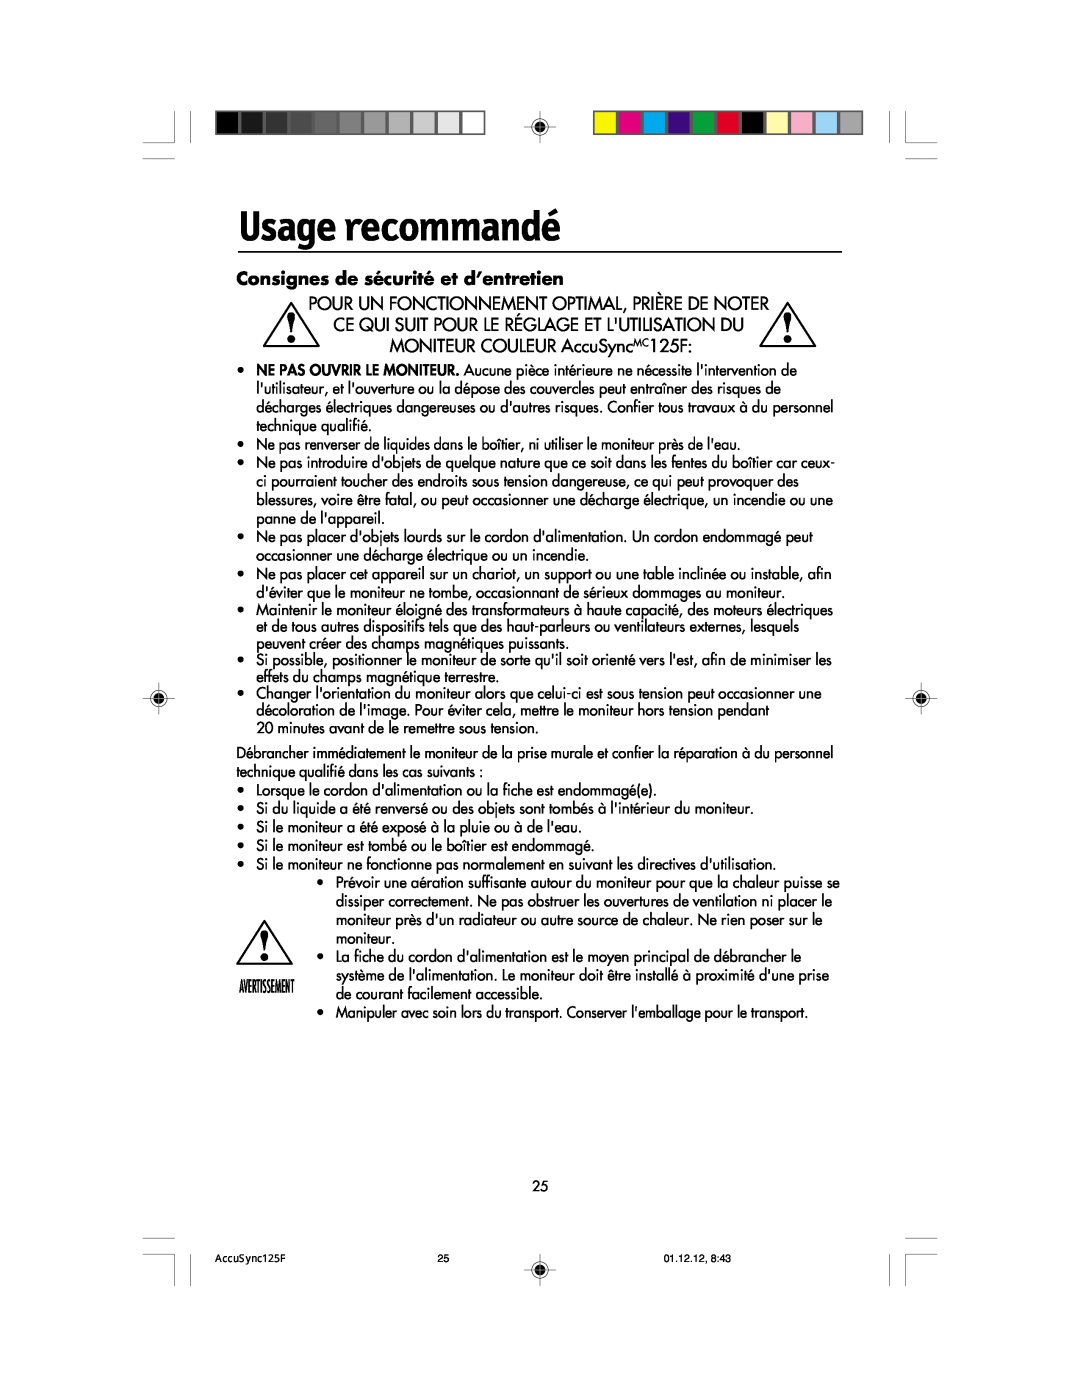 NEC 125F user manual Usage recommandé, Consignes de sécurité et d’entretien 